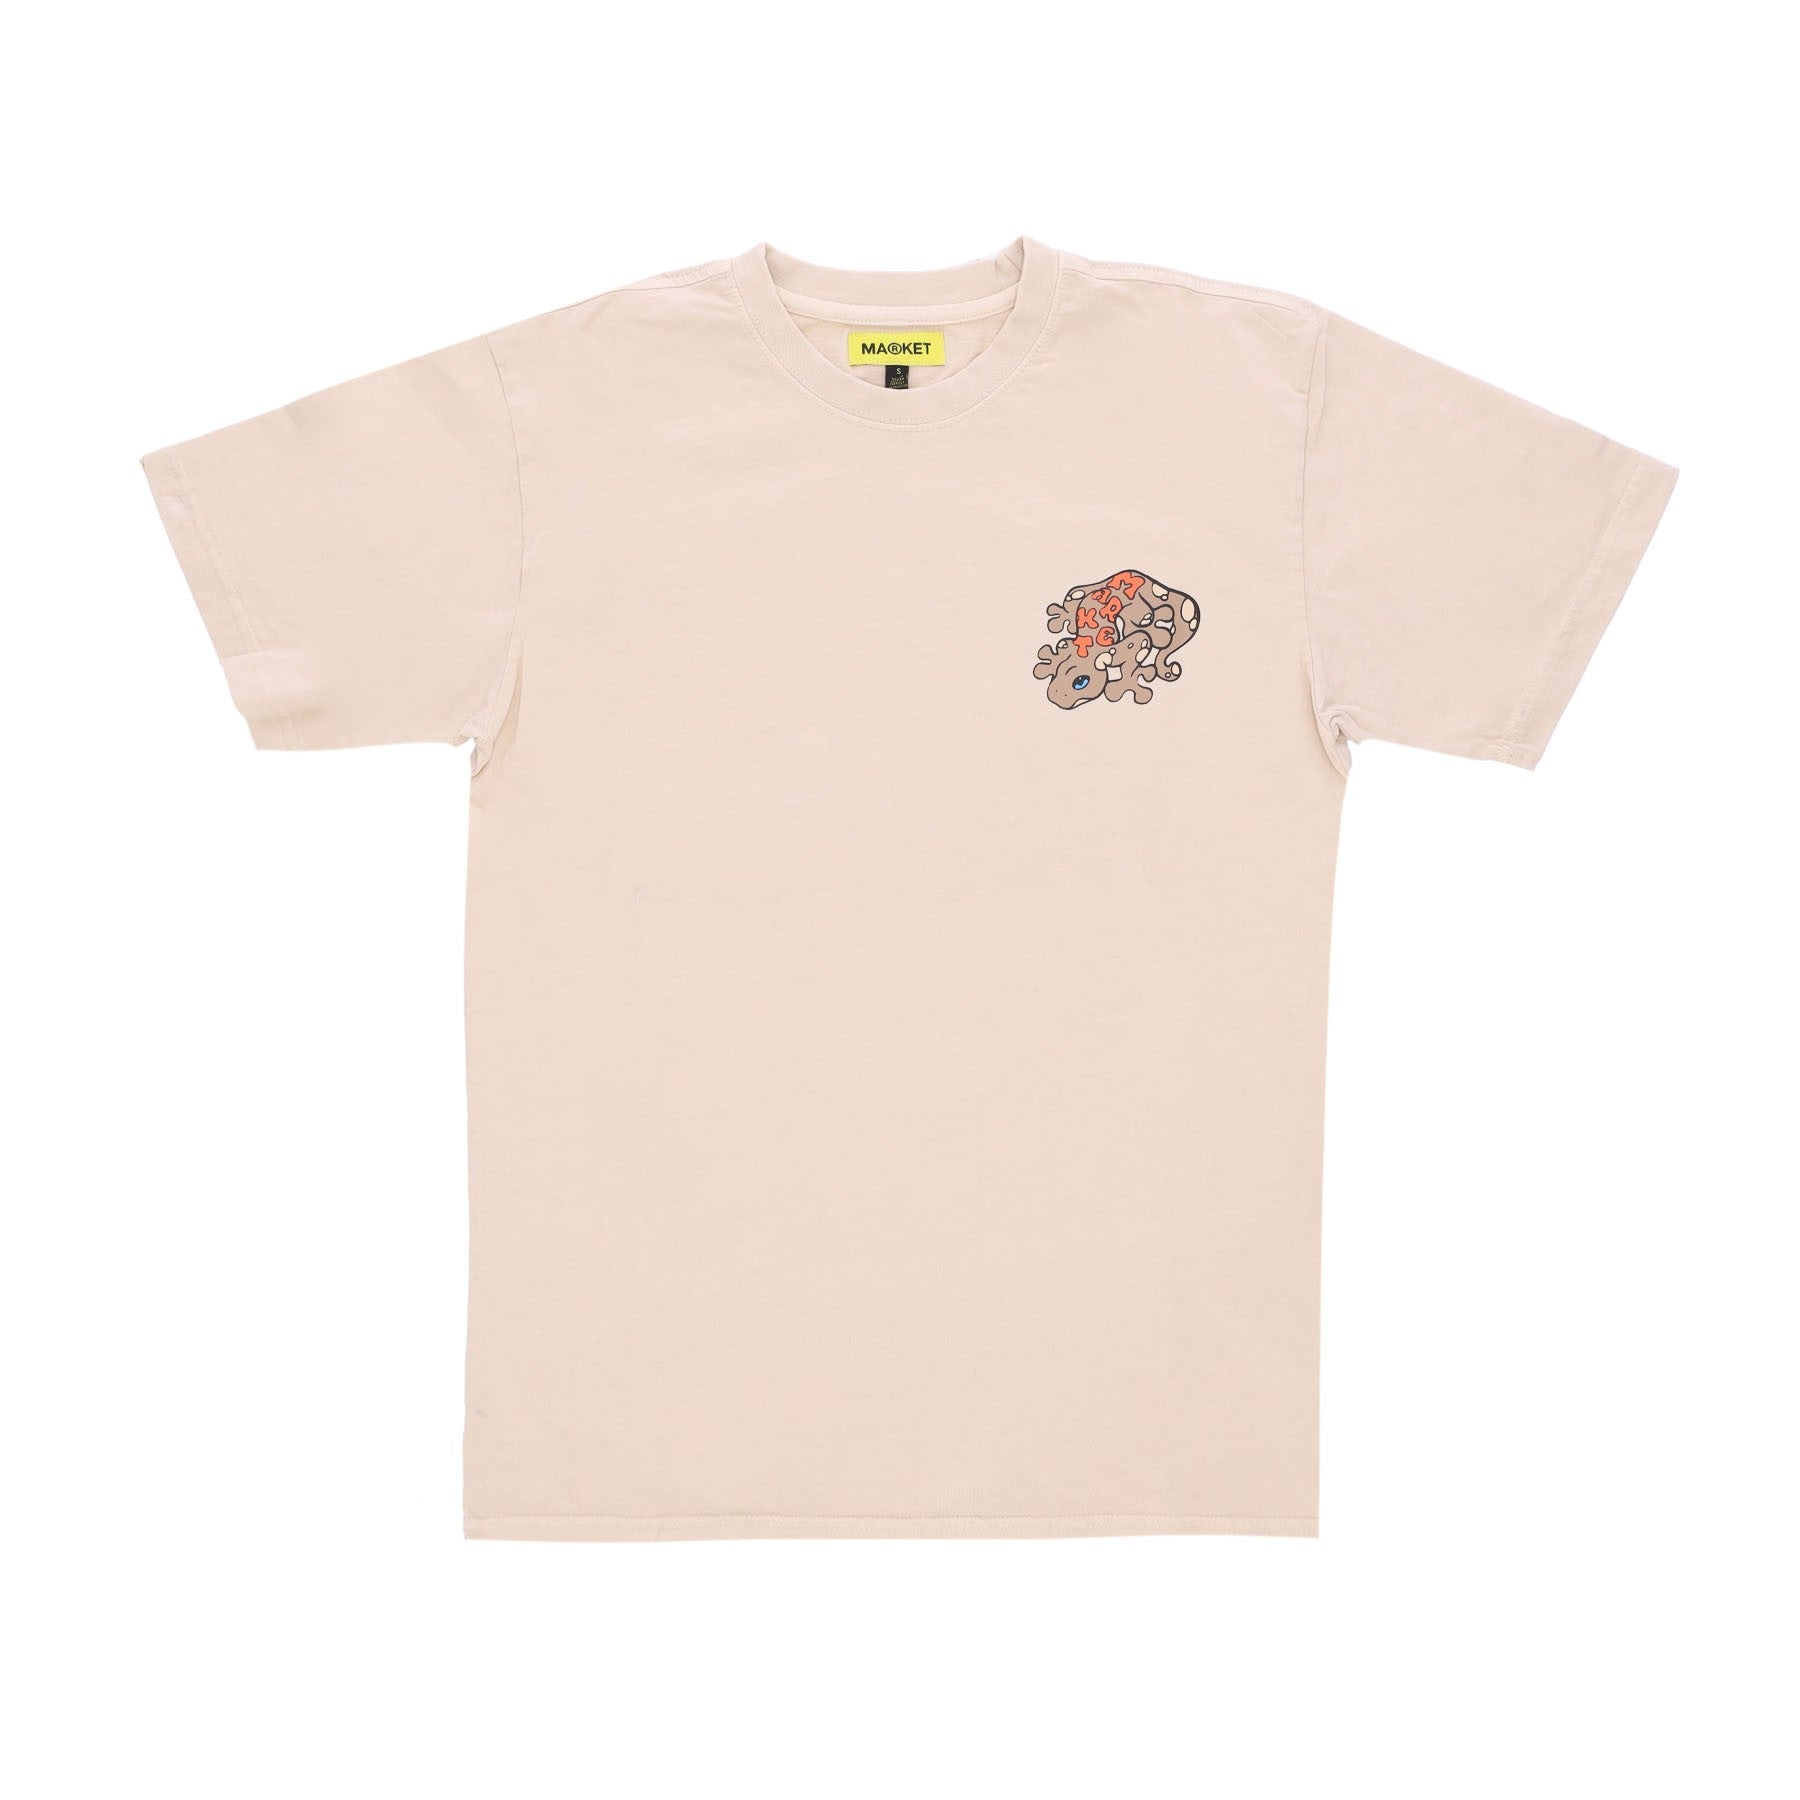 Lizard Tee Coconut Men's T-Shirt